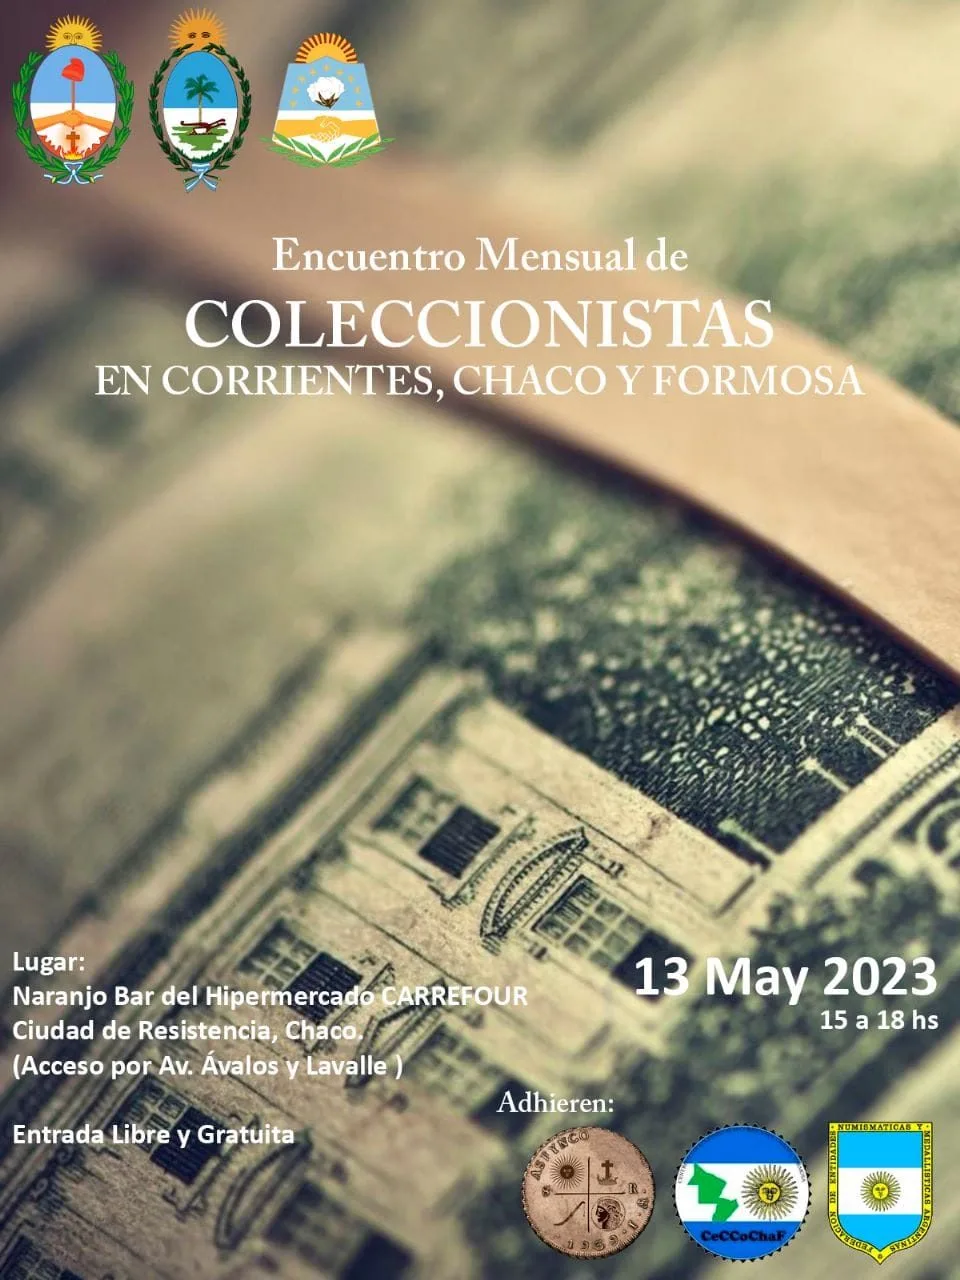 Encuentro Mensual de Coleccionistas - Corrientes, Chaco y Formosa